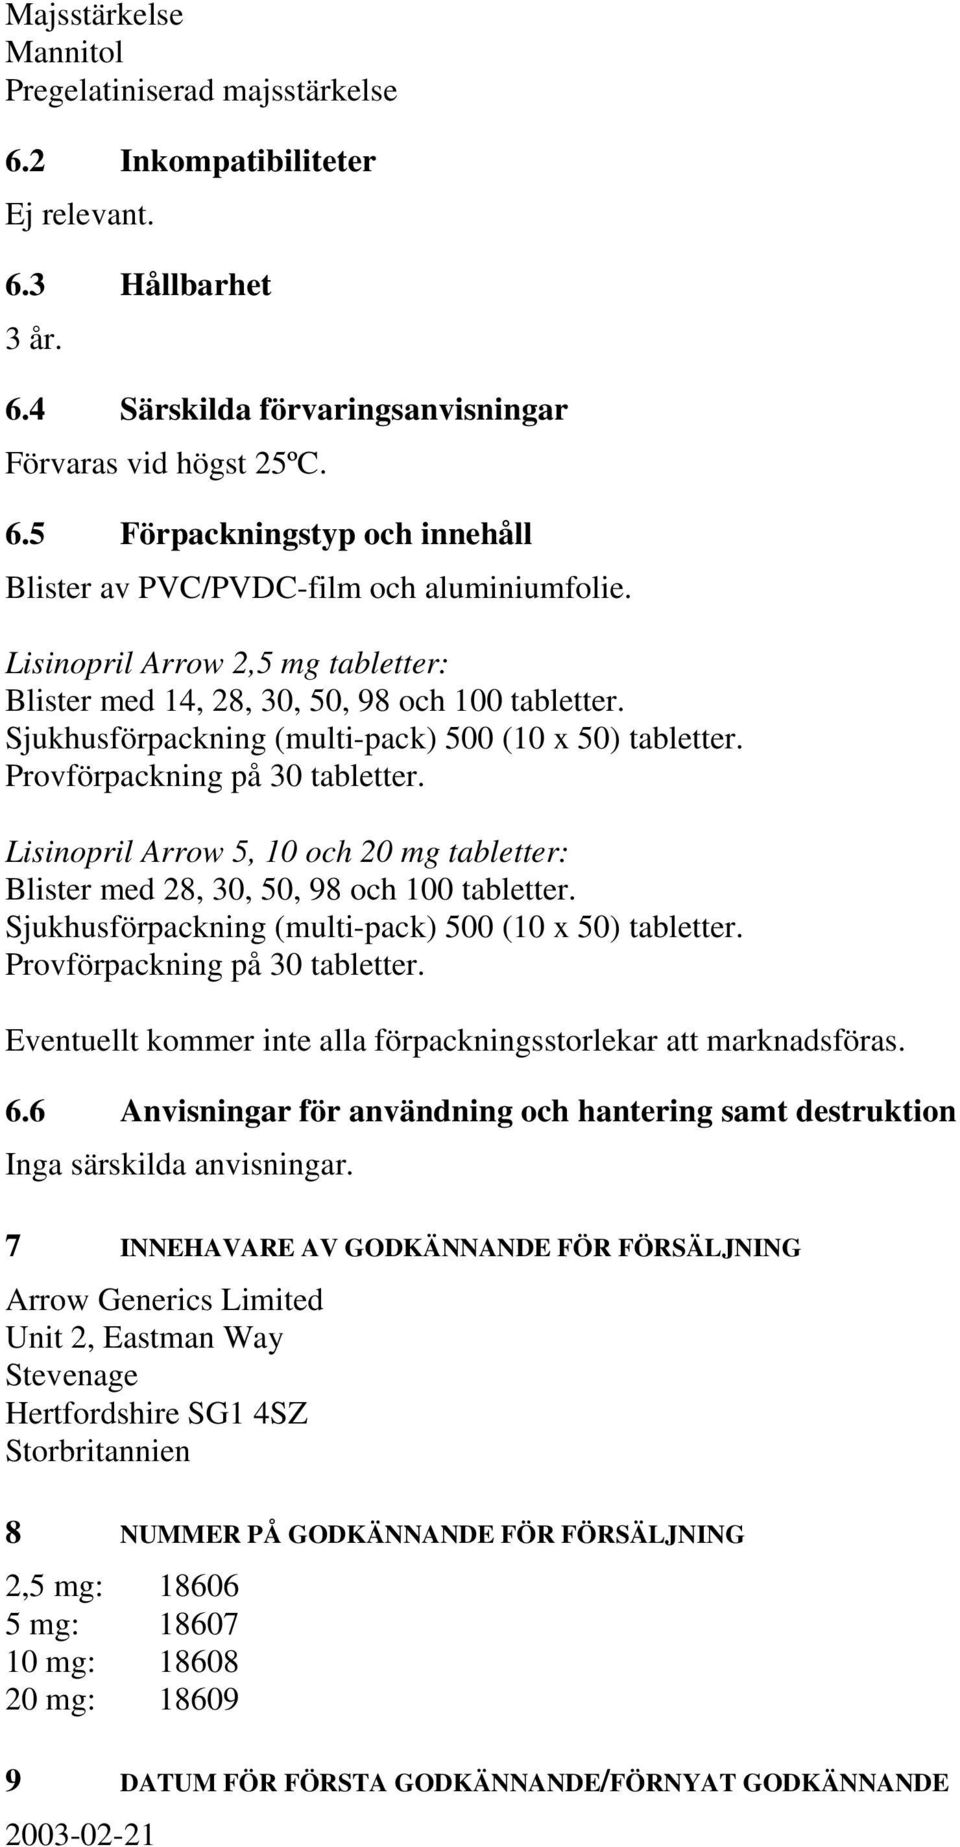 Lisinopril Arrow 5, 10 och 20 mg tabletter: Blister med 28, 30, 50, 98 och 100 tabletter. Sjukhusförpackning (multi-pack) 500 (10 x 50) tabletter. Provförpackning på 30 tabletter.